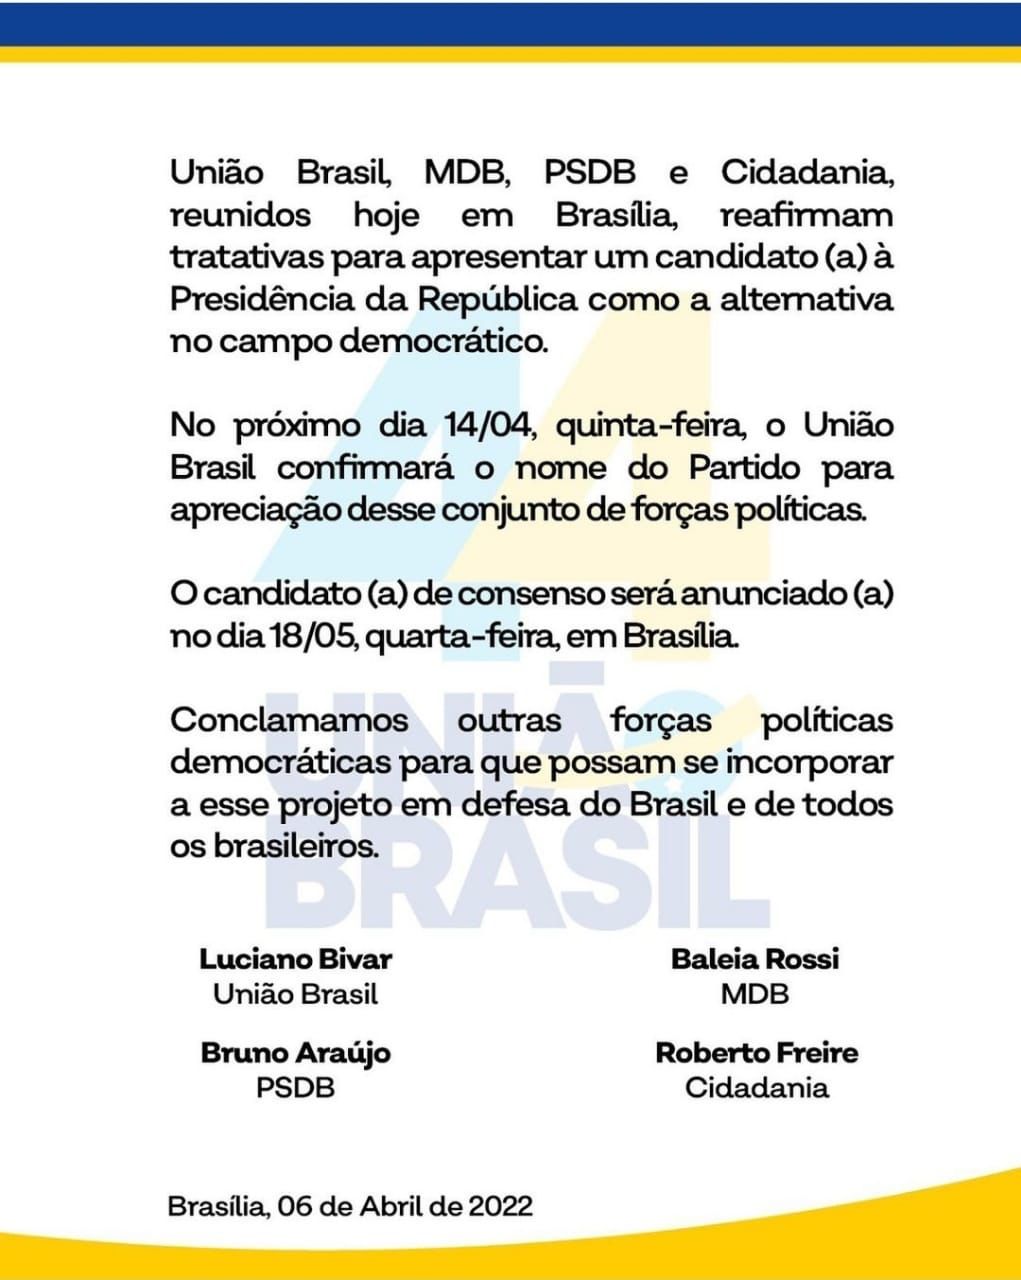 WhatsApp Image 2022 04 06 at 19.37.48 - TERCEIRA VIA: União Brasil, MDB, PSDB e Cidadania se juntam para candidatura única; nome deve ser lançado dia 18